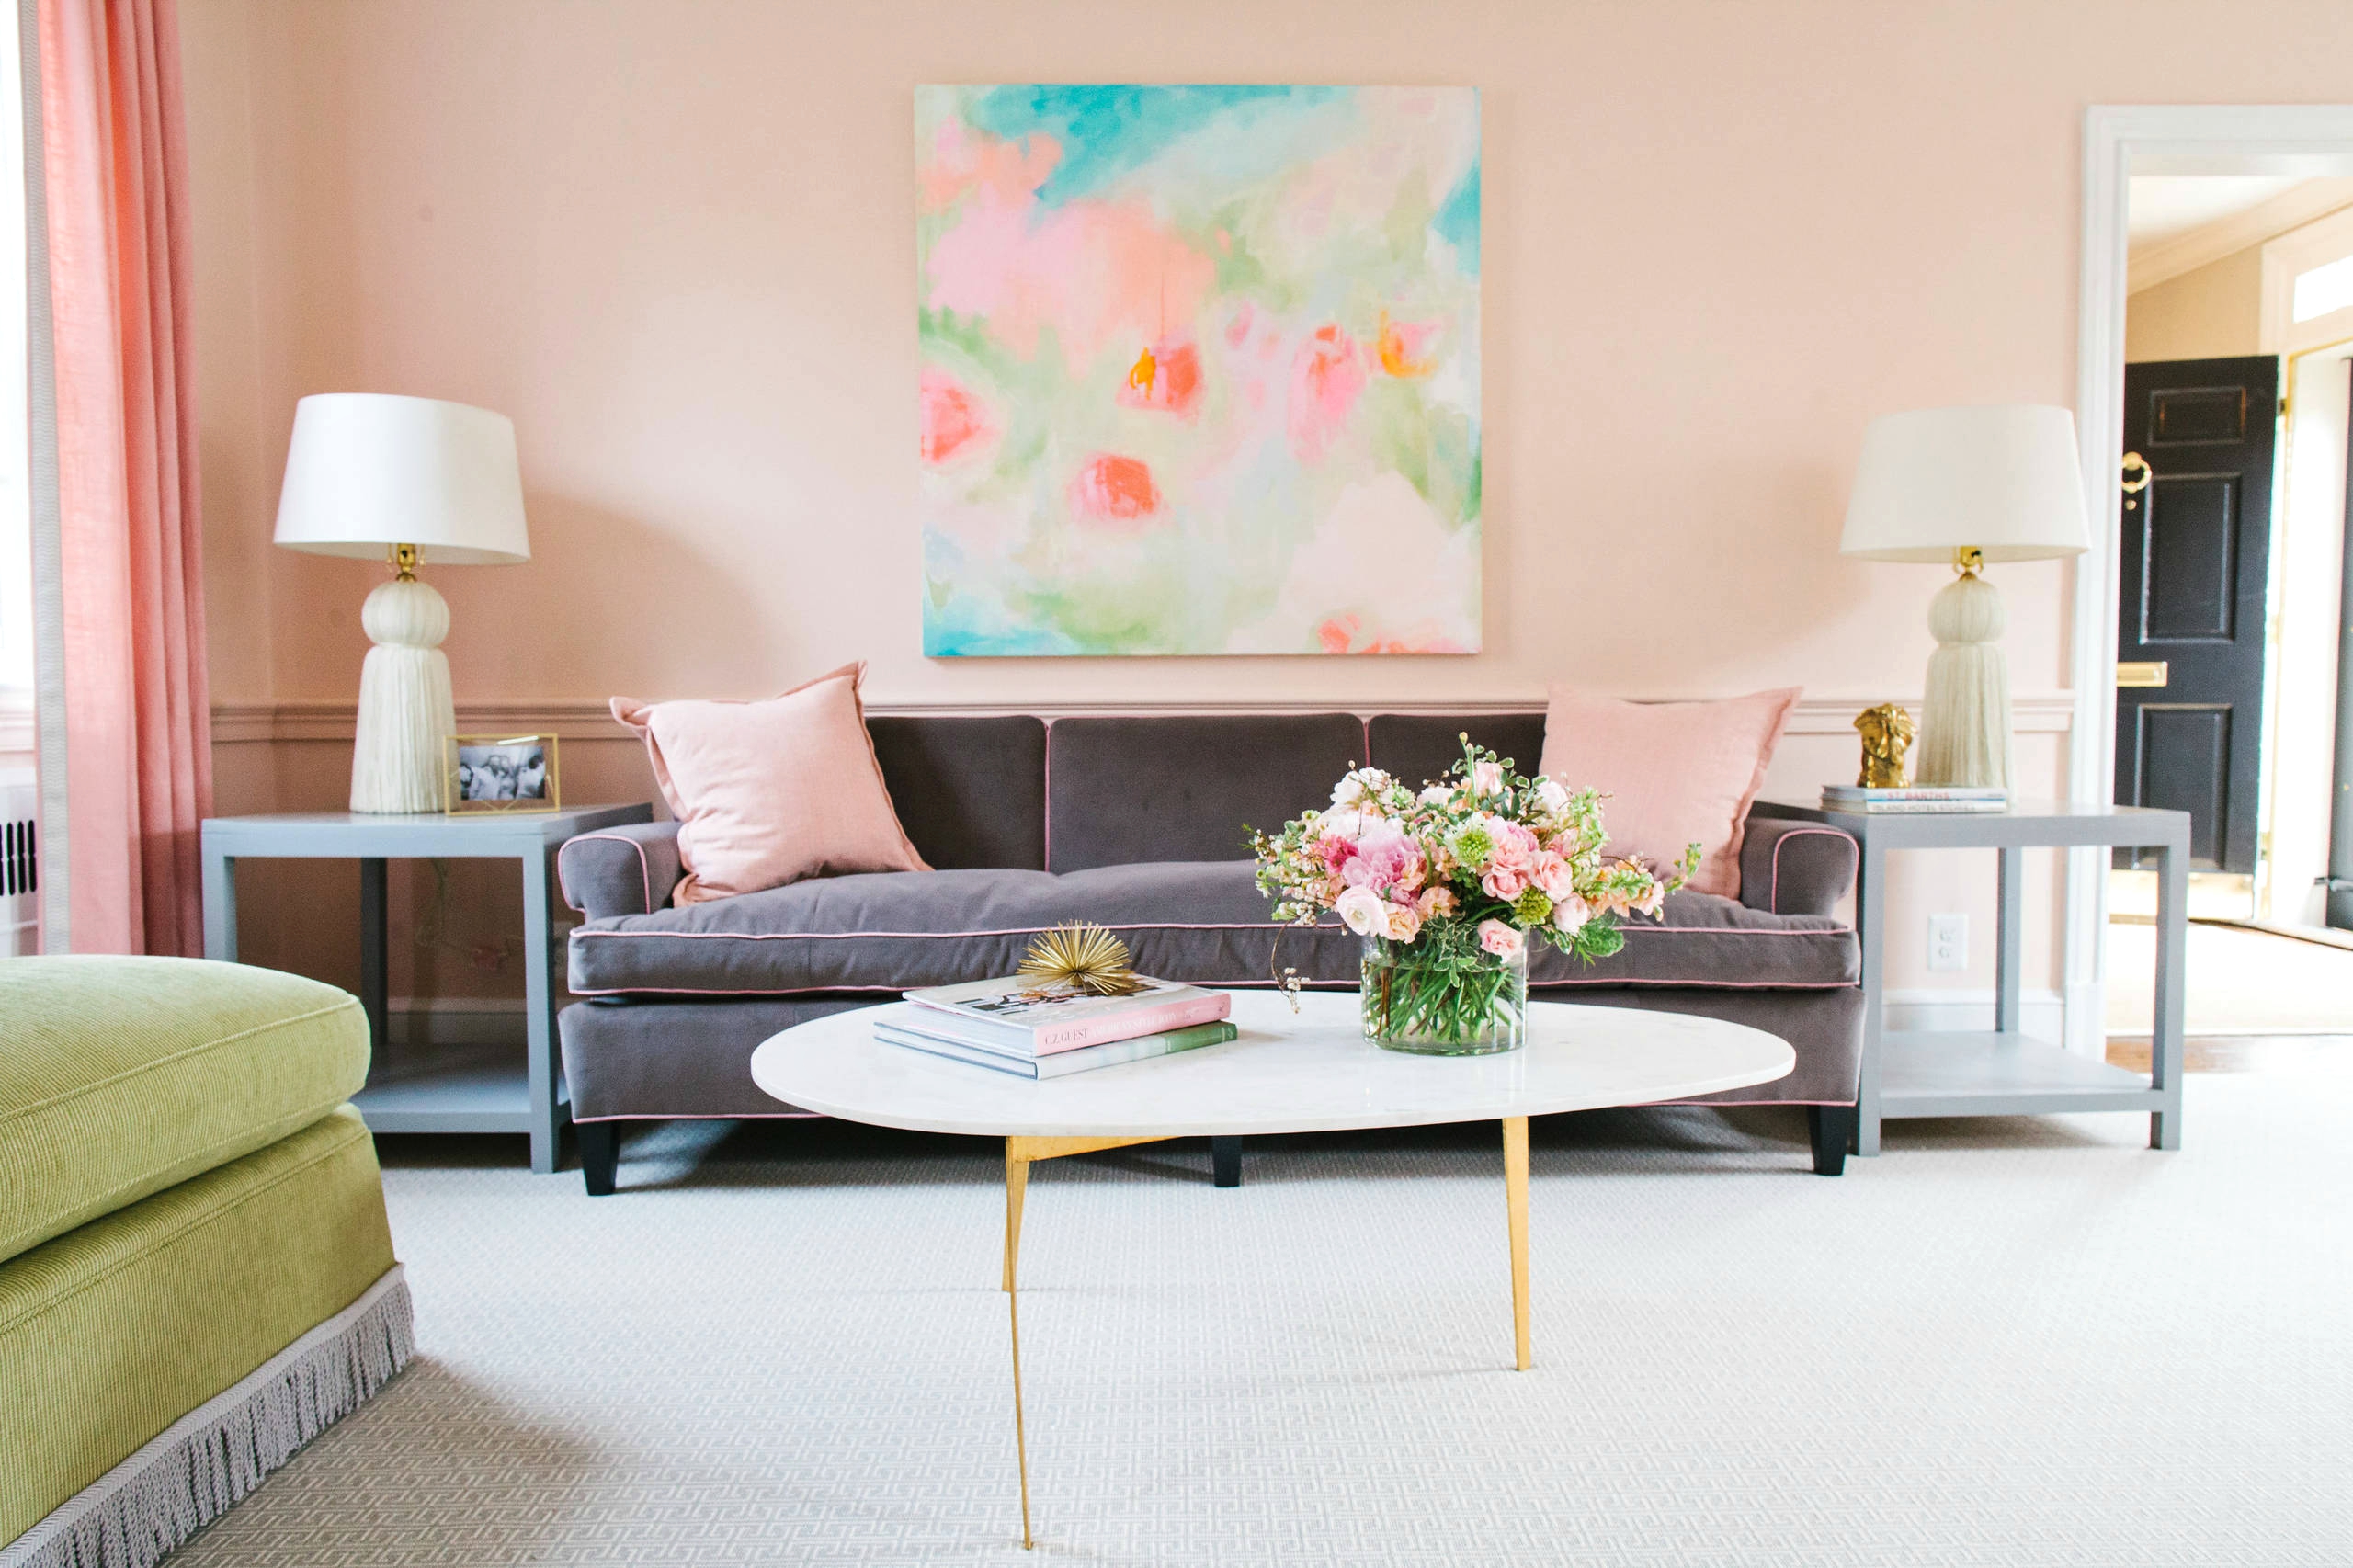 二居 客厅图片来自三好同创装饰公司在在家中添加粉红色的时尚方法的分享